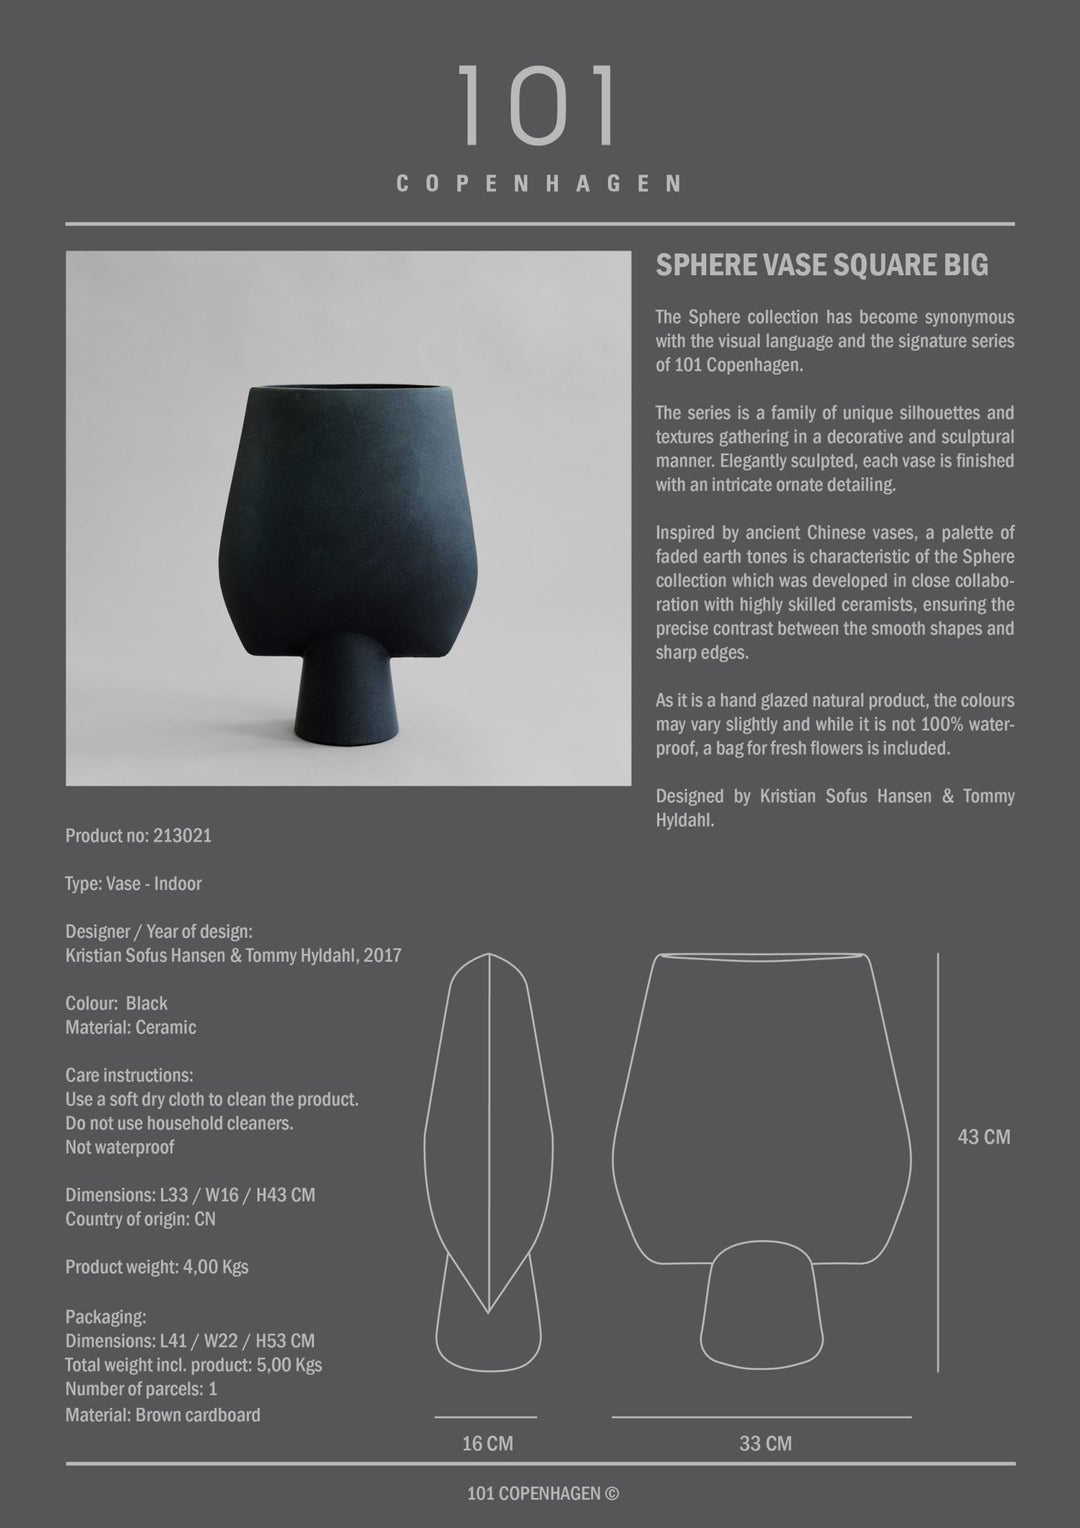 101 Copenhagen Sphere Vase Square, Big - $250